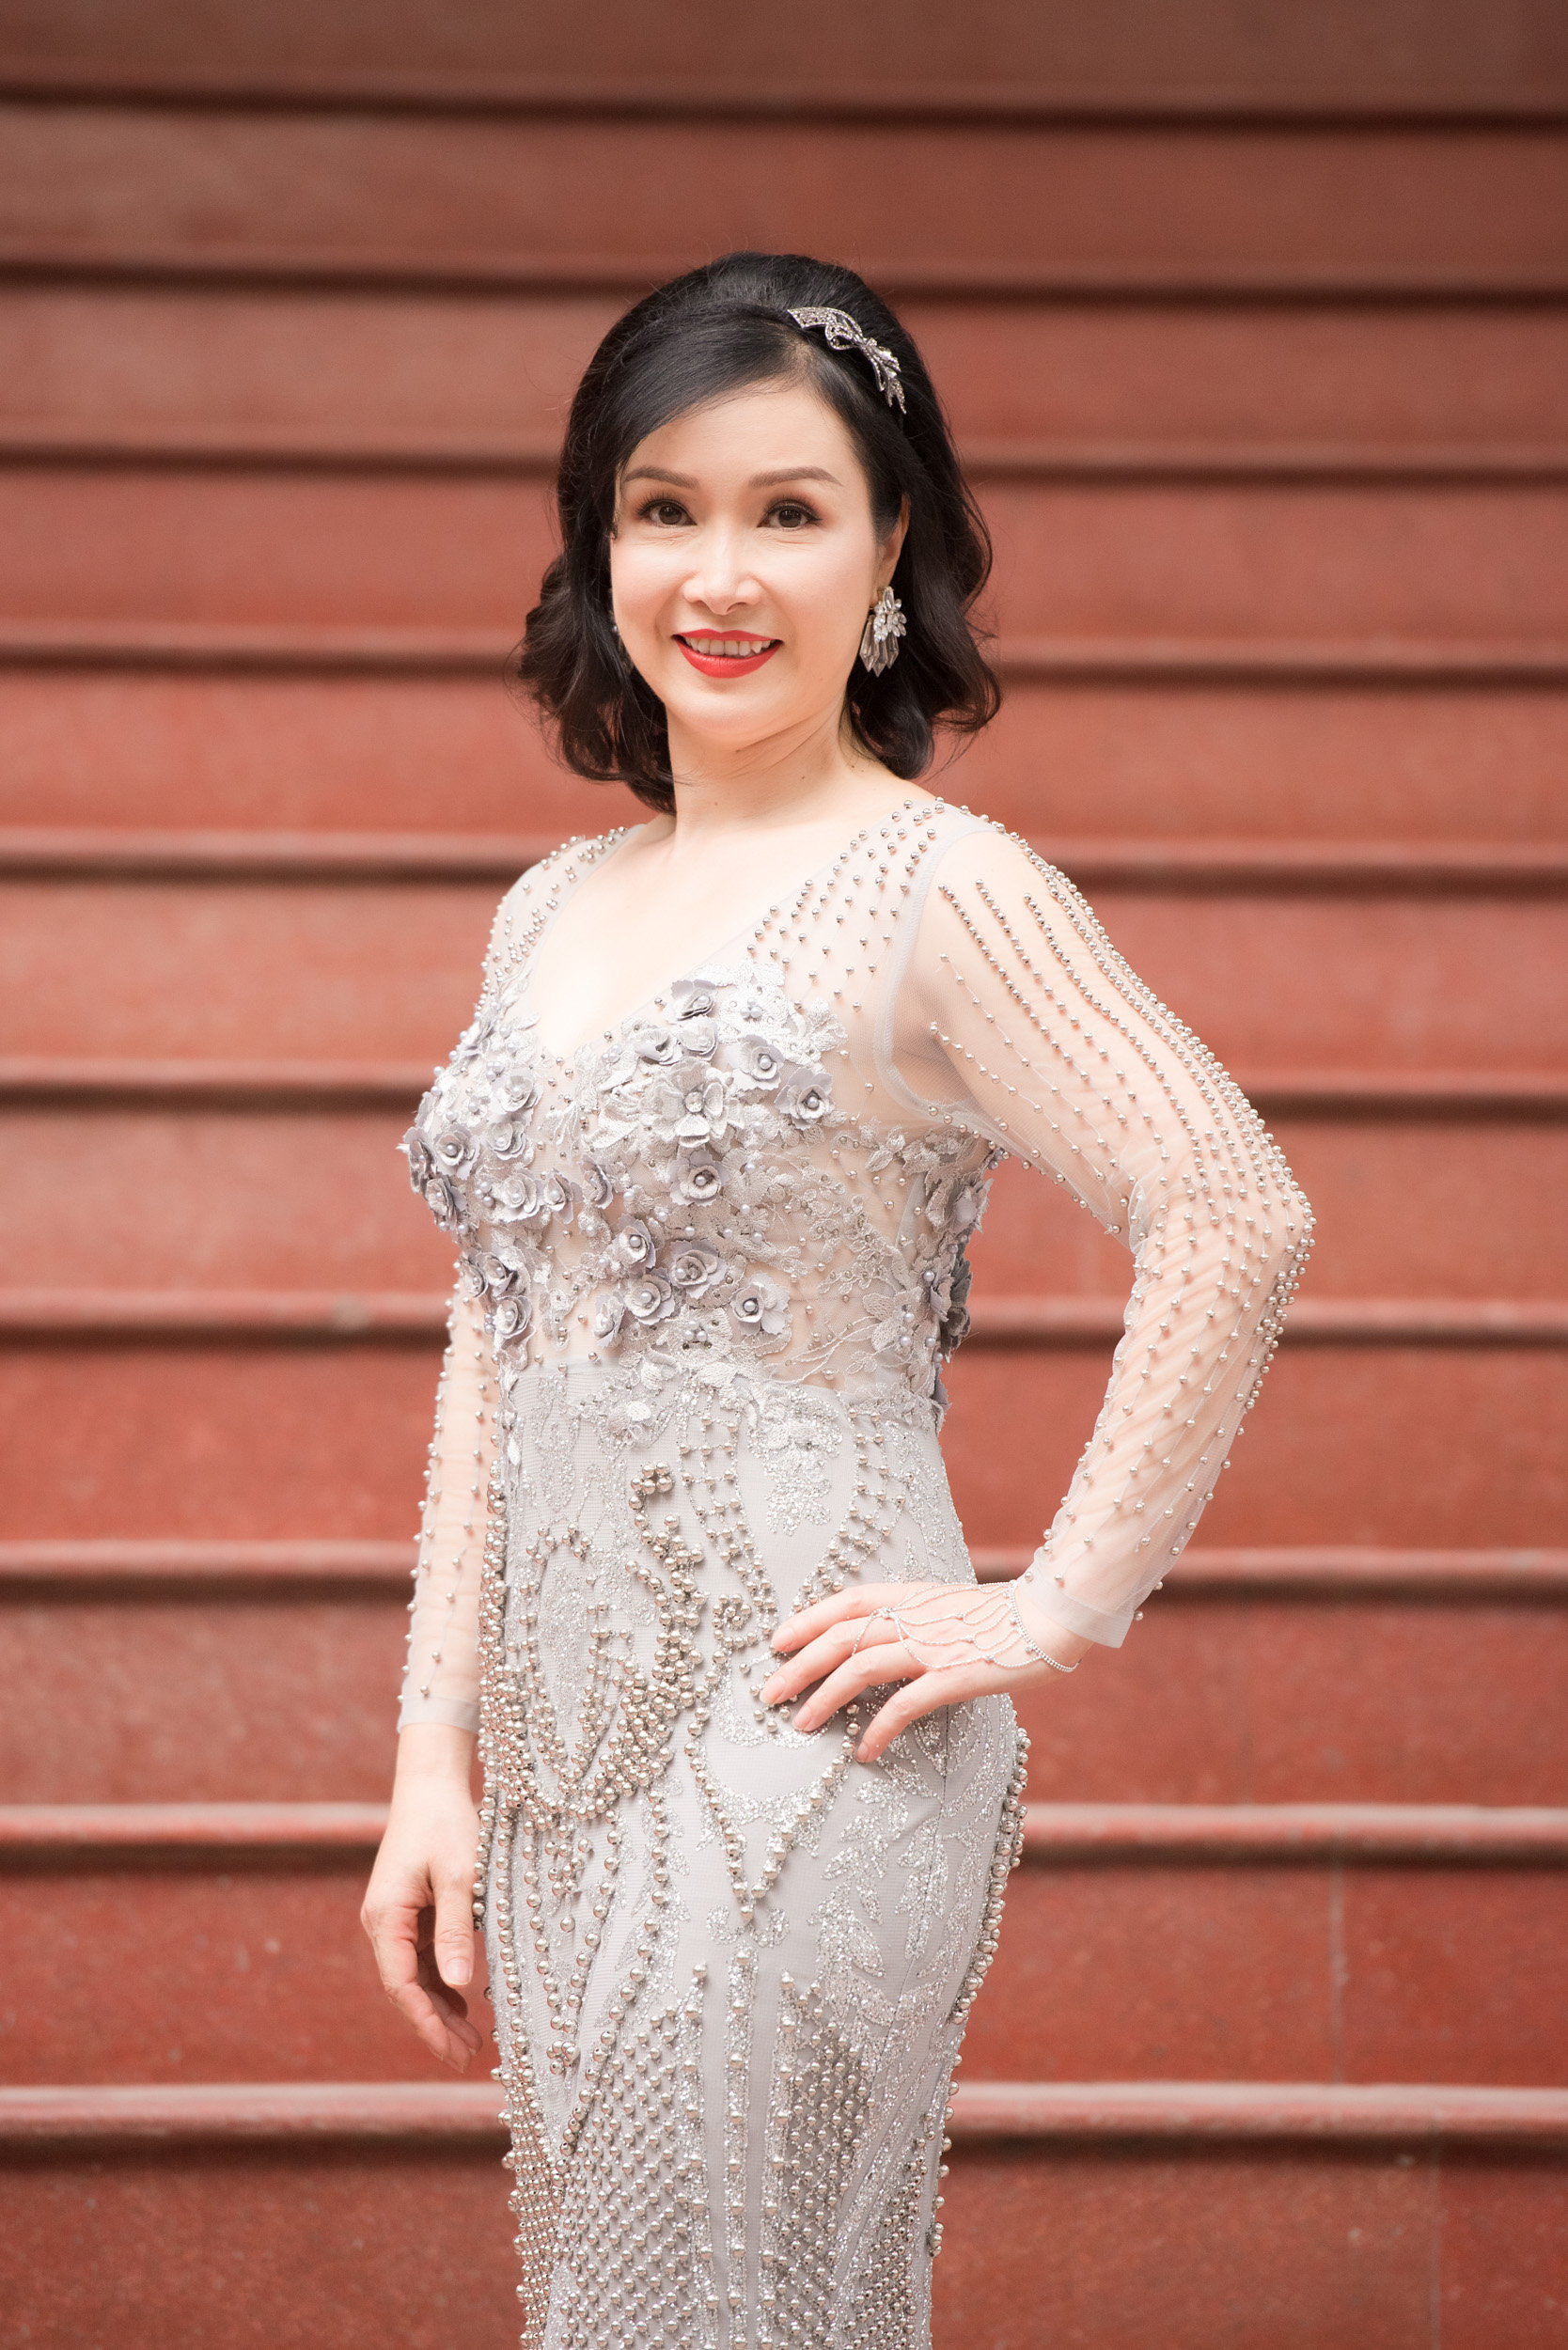 Hoa hậu Bùi Bích Phương, NTK Lê Thanh Hòa, bà Phạm Kim Dung – Phó BTC Hoa hậu Việt Nam 2018 và Tổng đạo diễn Hoàng Nhật Nam cũng xuất hiện tại buổi Sơ khảo để gặp gỡ các thí sinh.